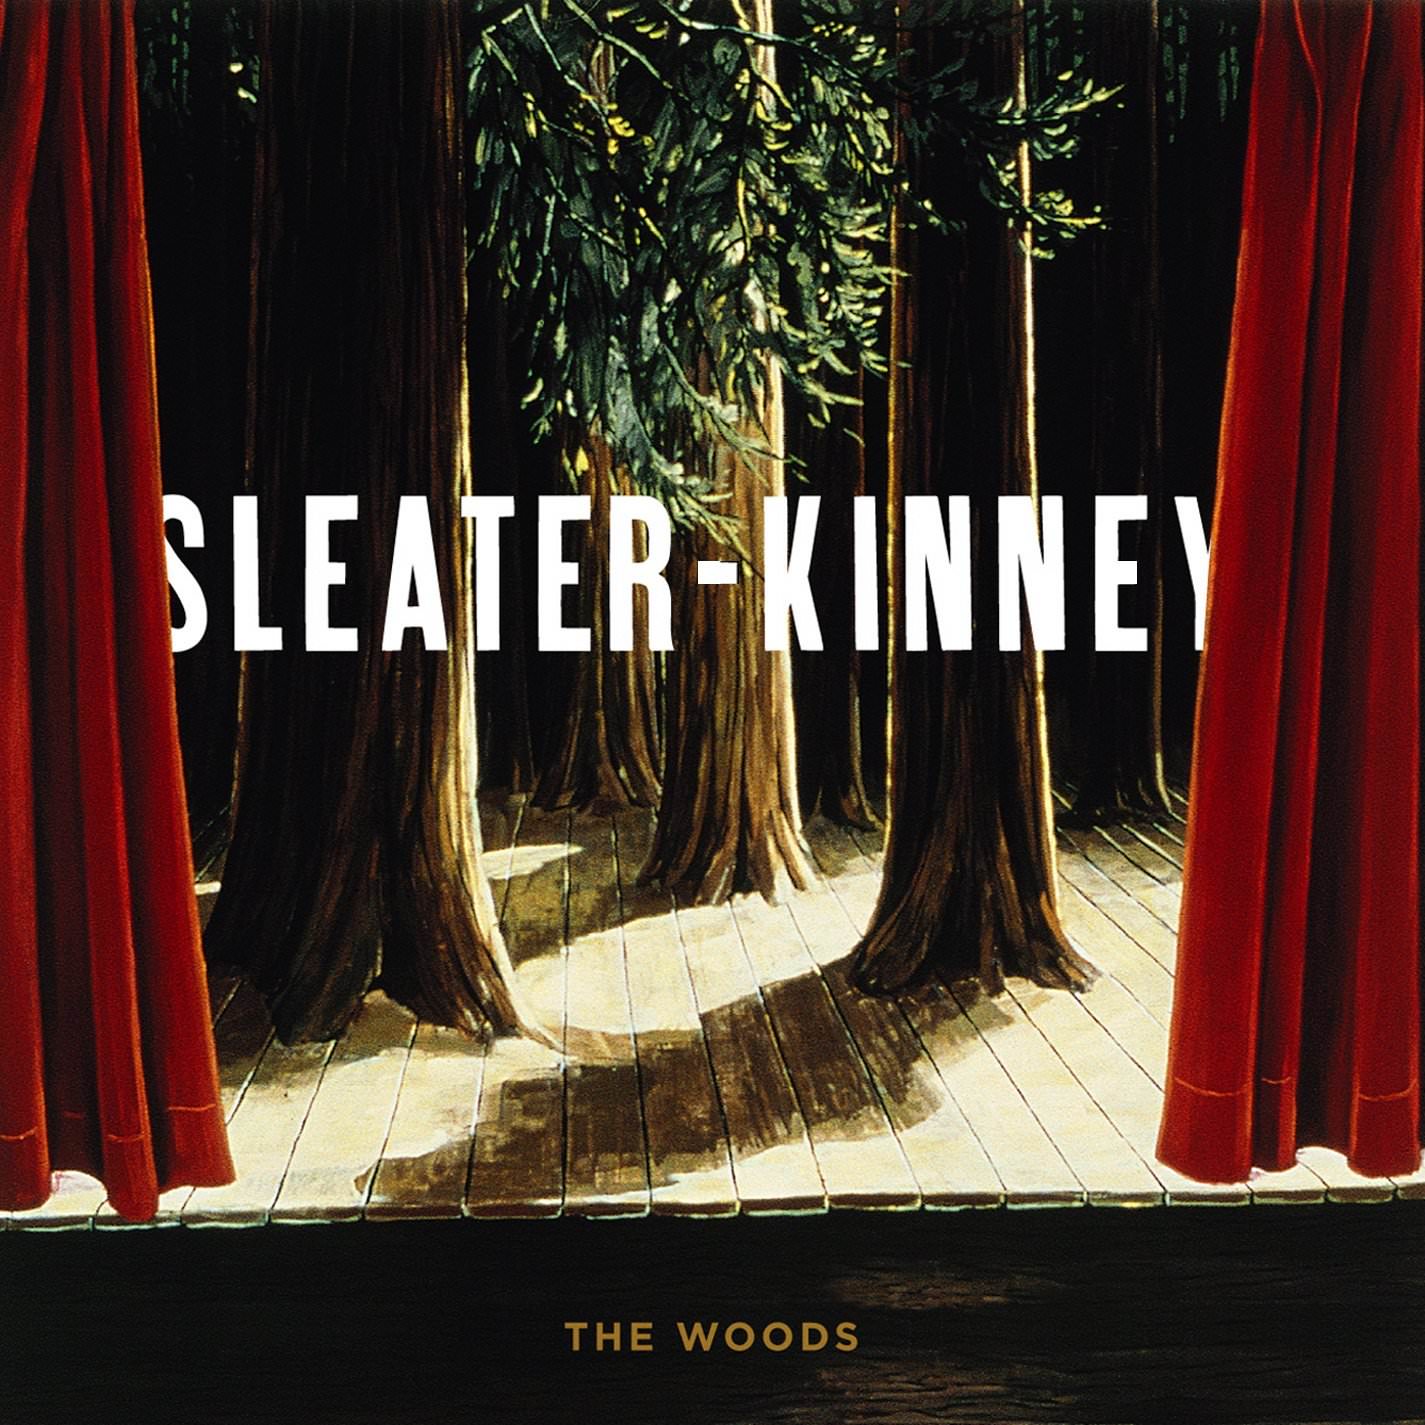 Sleater-Kinney - The Woods (2005/2014) [HDTracks FLAC 24bit/44,1kHz]